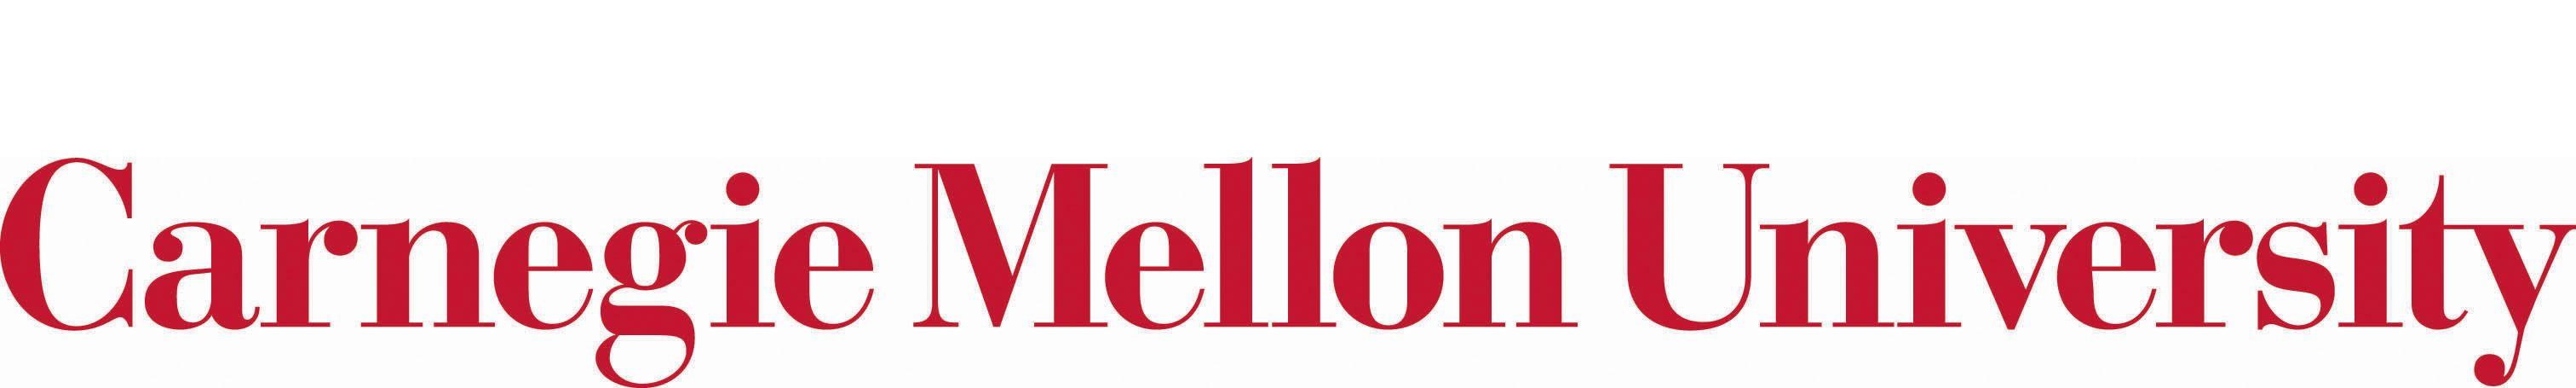 Carnegie Mellon University Logo - LogoDix